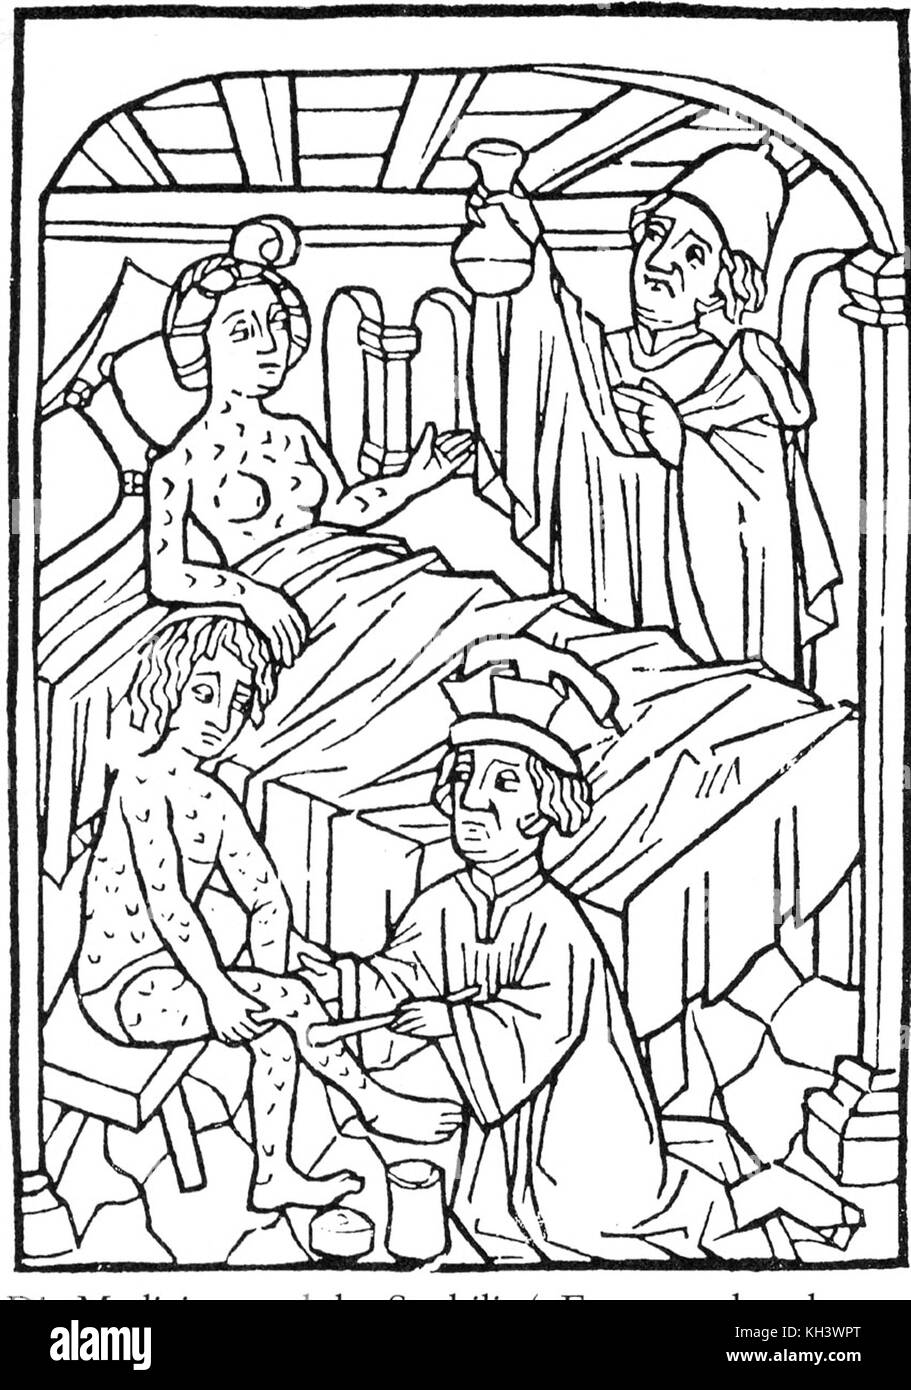 Syphilis. Une illustration médicale précoce des personnes atteintes de syphilis, Vienne, 1498 Banque D'Images